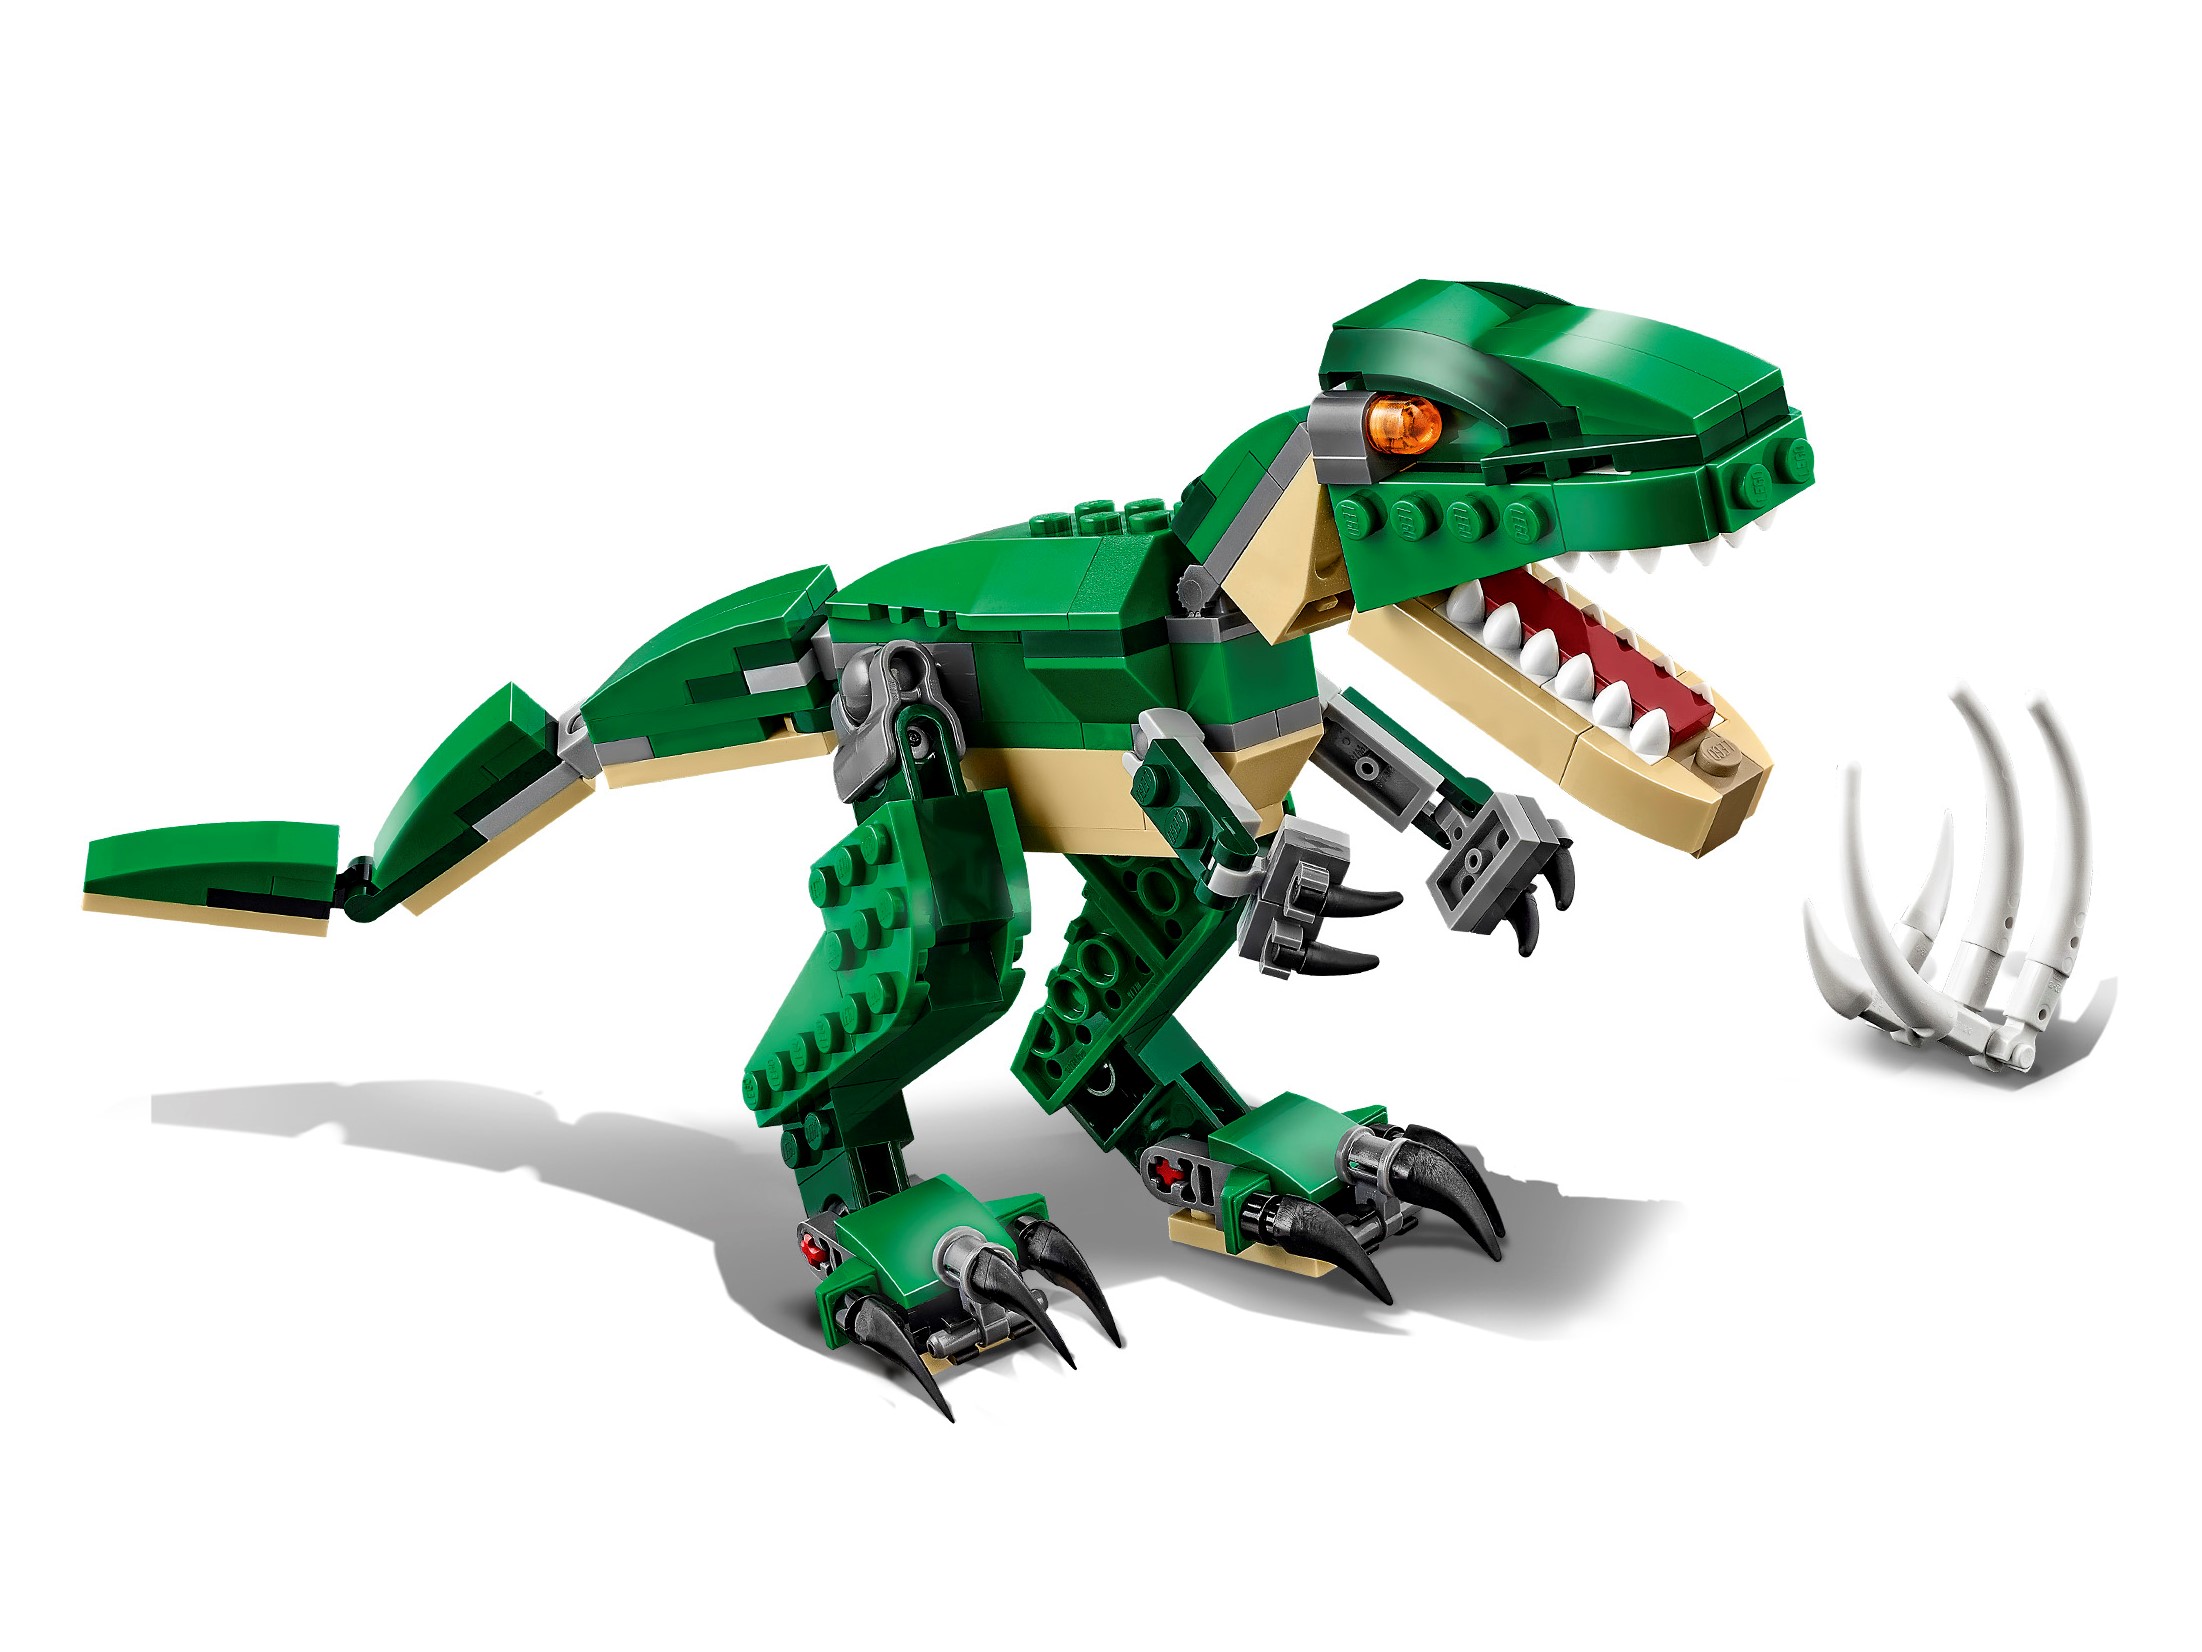 LEGO Creator 31058 Le Dinosaure Féroce